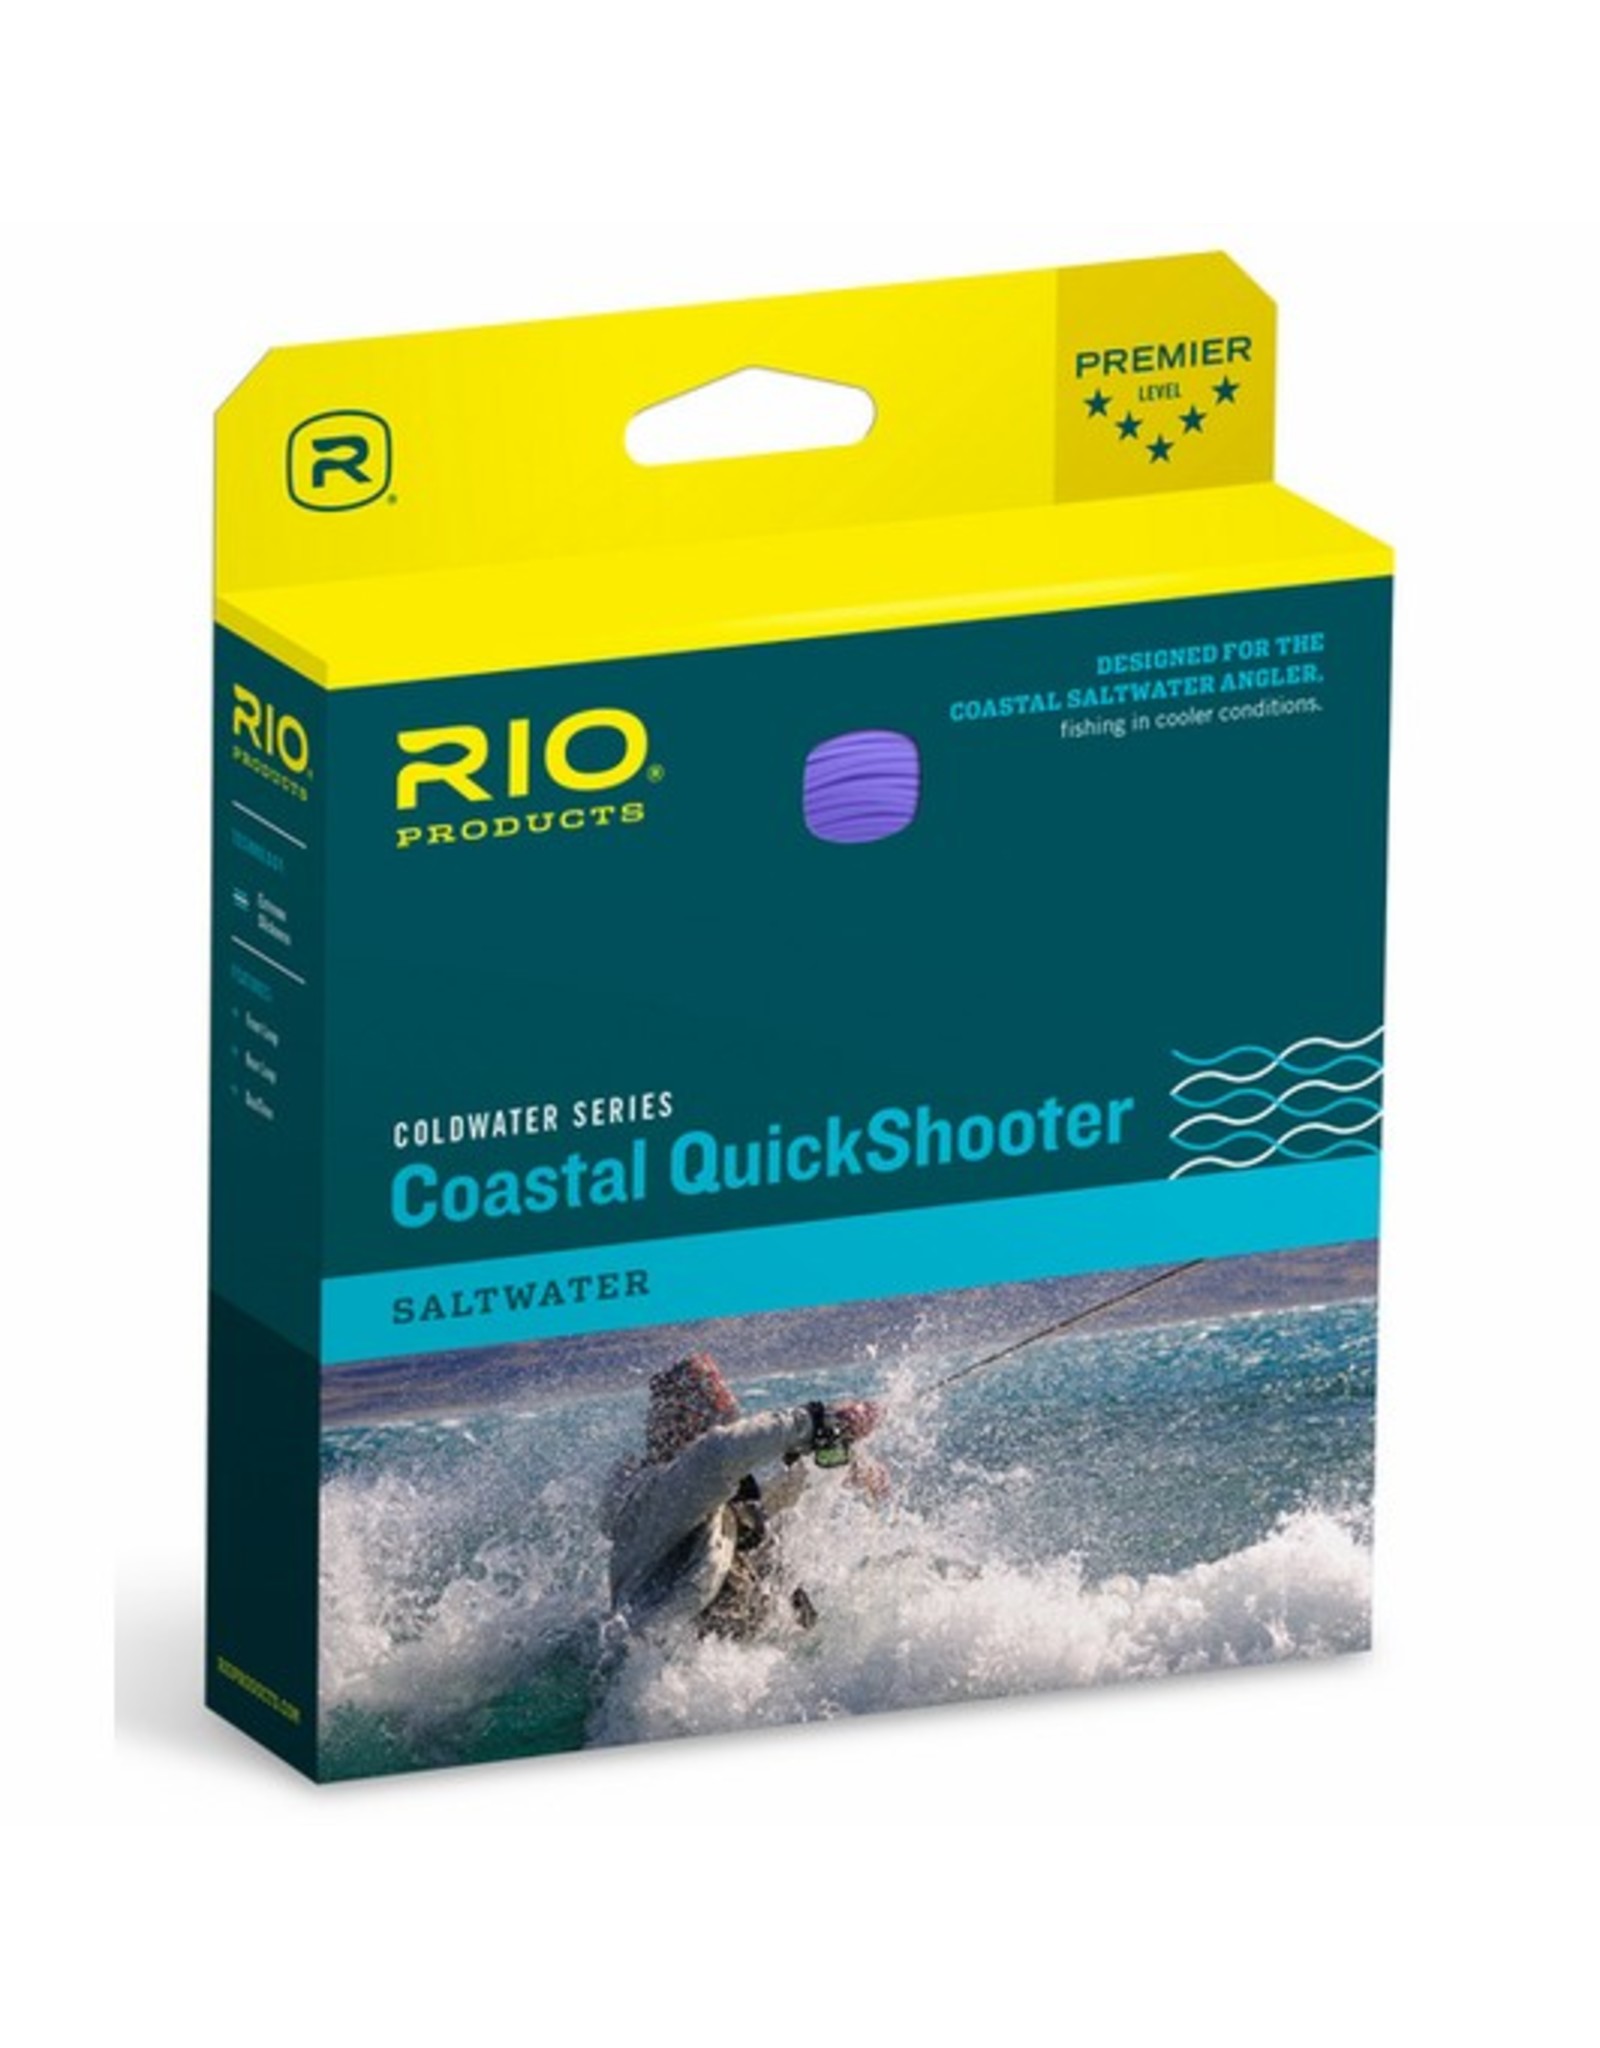 Rio Premier Coastal Quickshooter